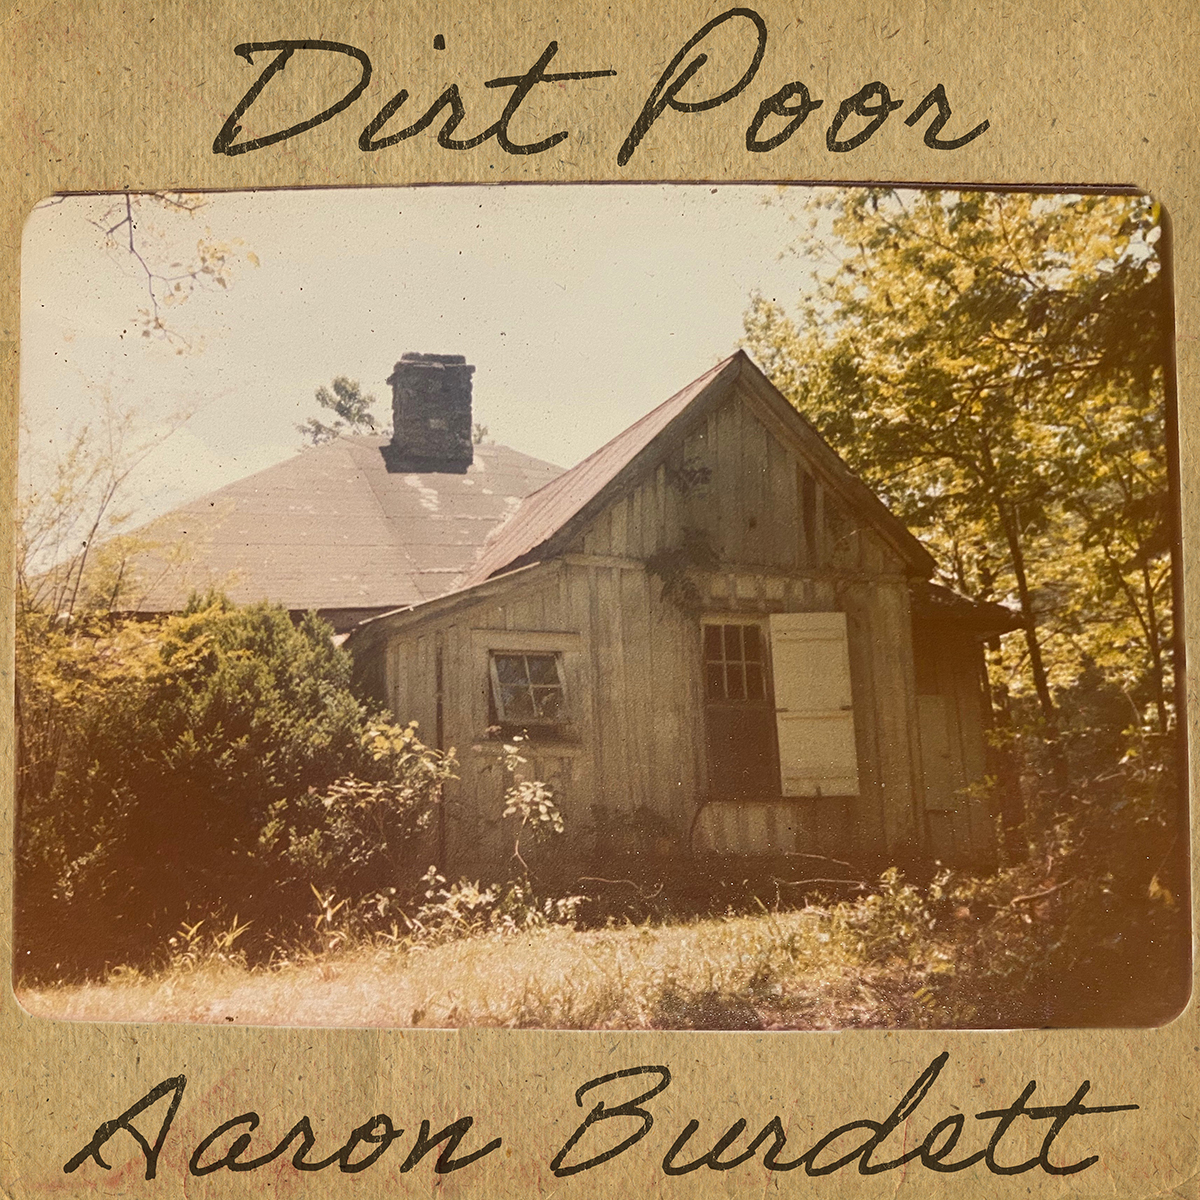 The cover of Aaron Burdett's Dirt Poor